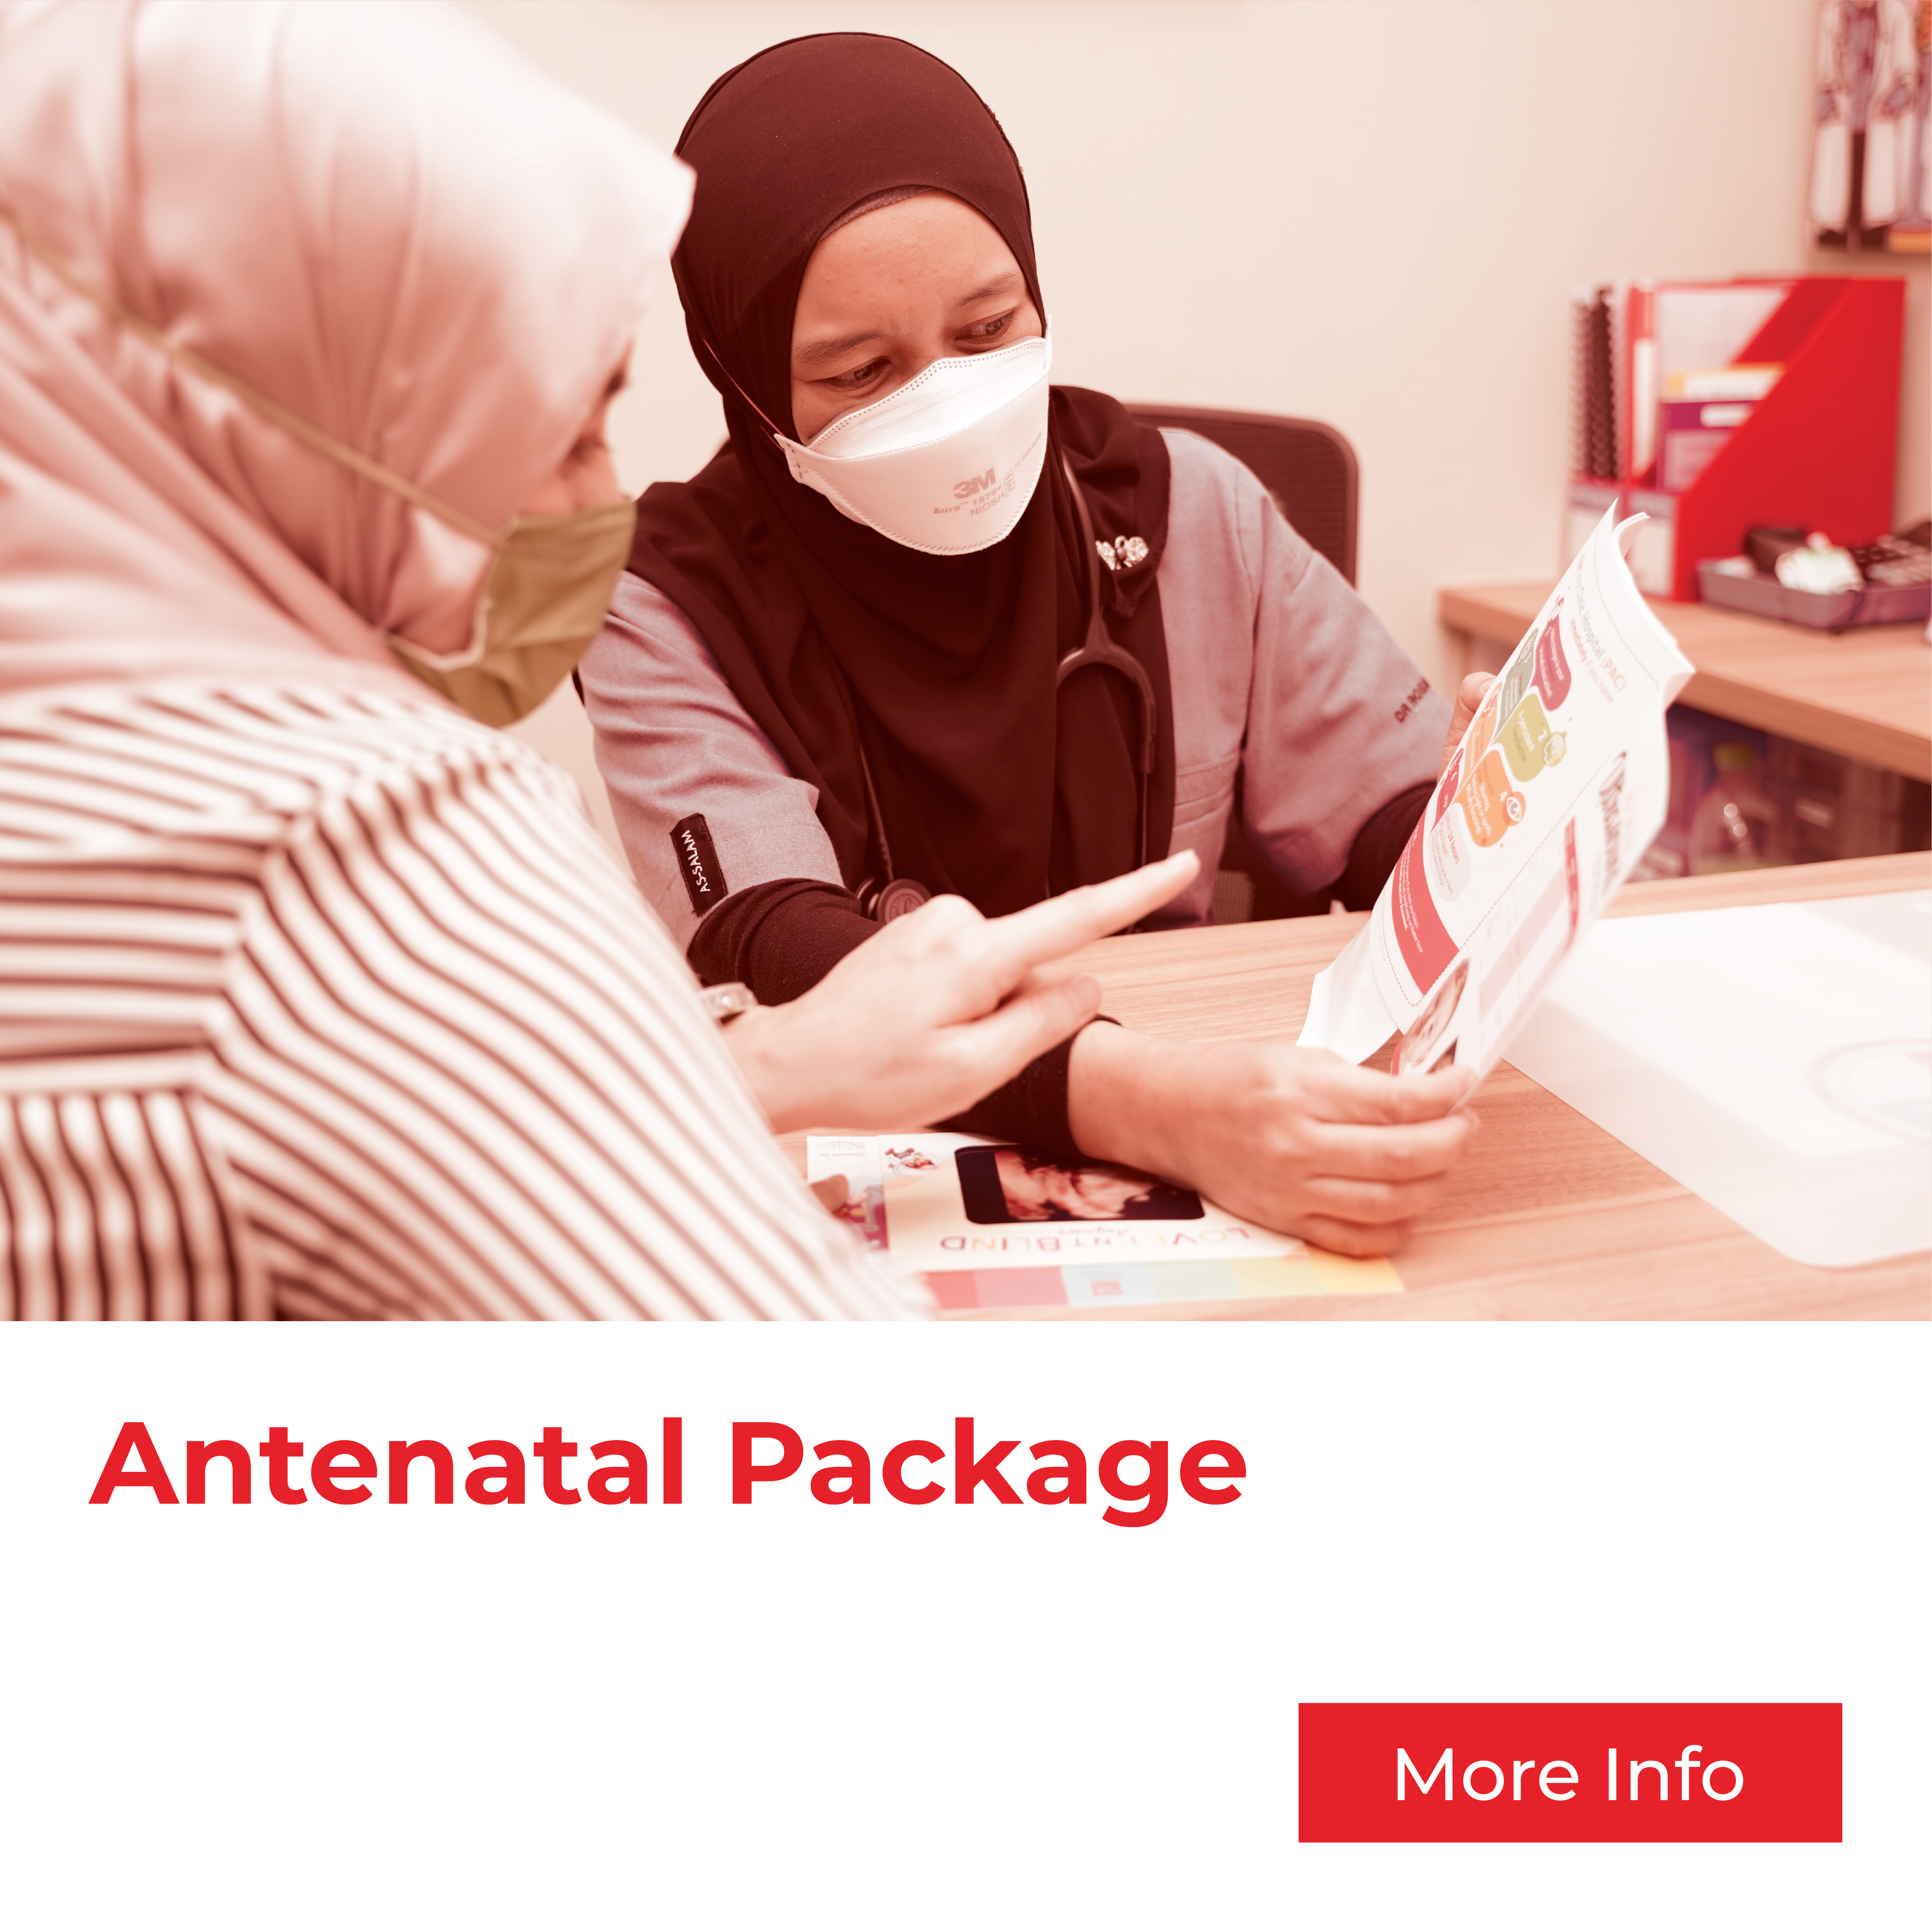 Antenatal Care Package Checkup from Klinik As Salam